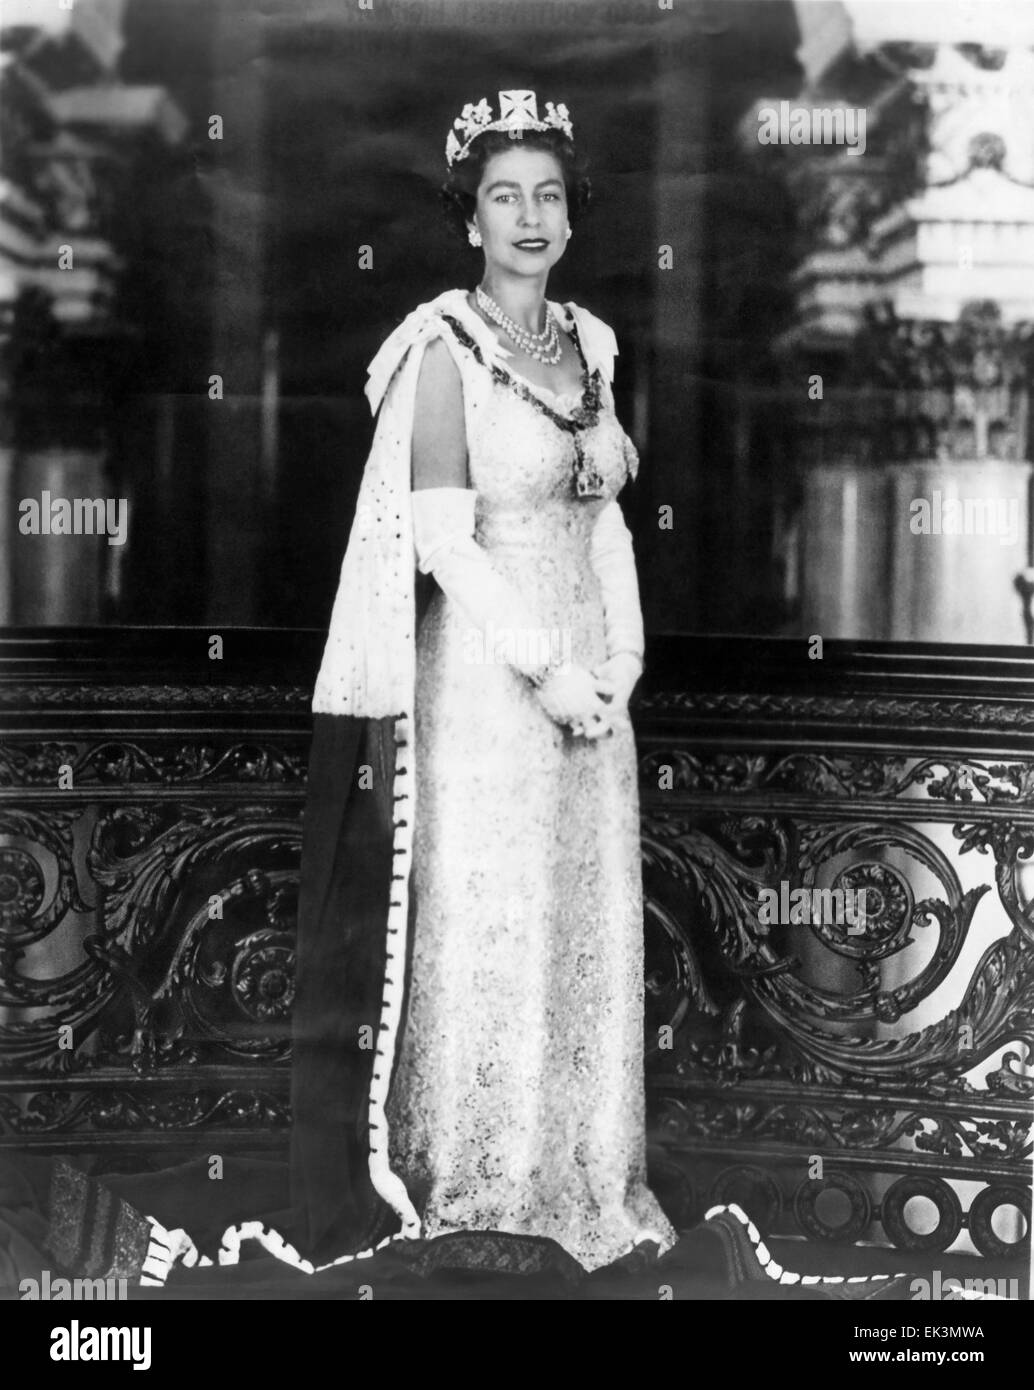 La reine Elizabeth II, Portrait, vers le milieu des années 1950 Banque D'Images